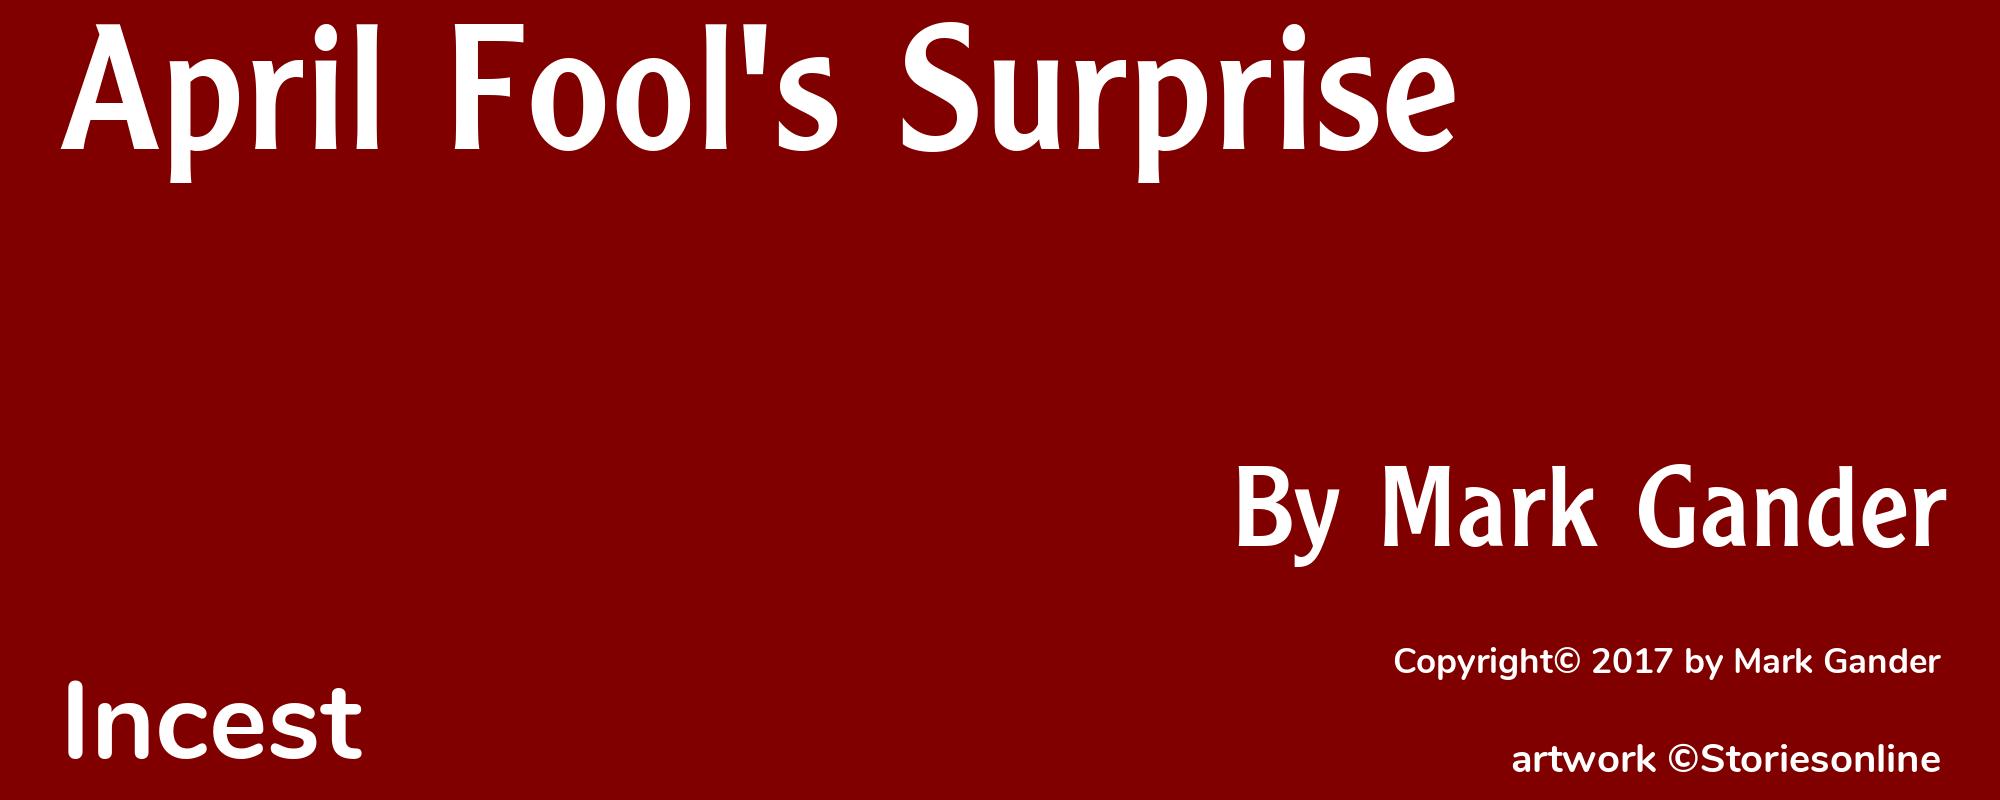 April Fool's Surprise - Cover